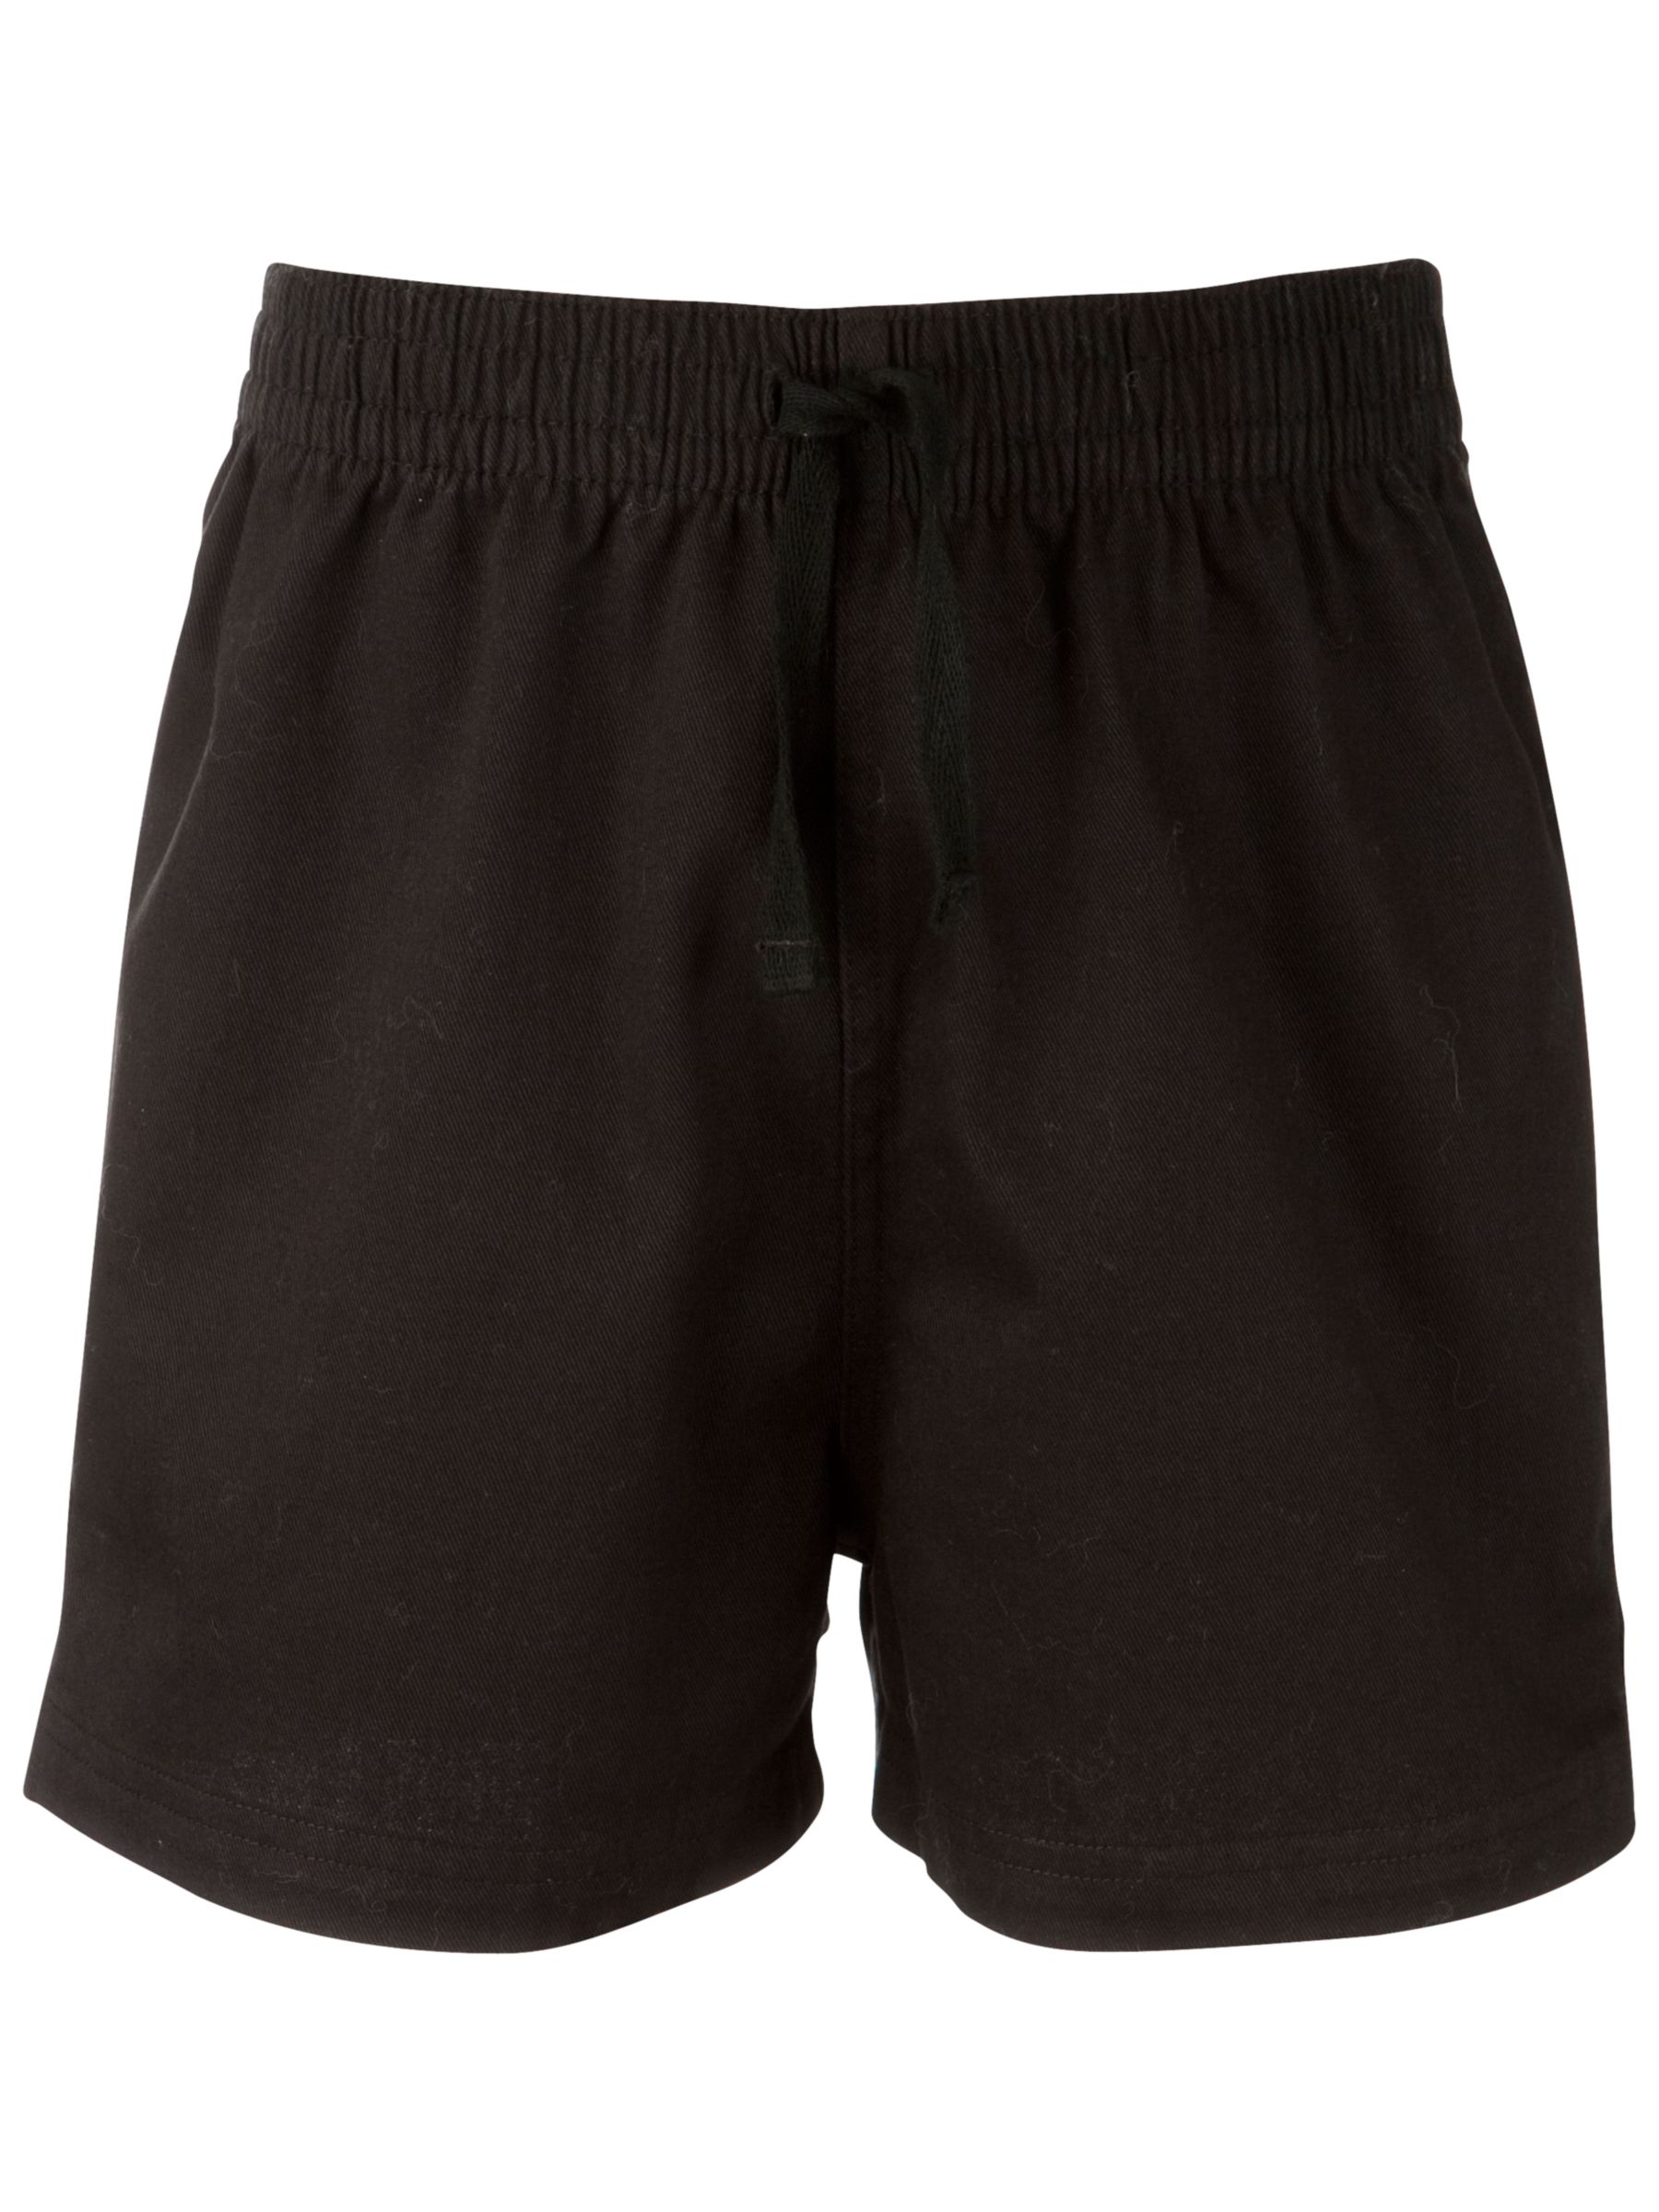 Buy John Lewis Cotton PE Shorts, Black | John Lewis